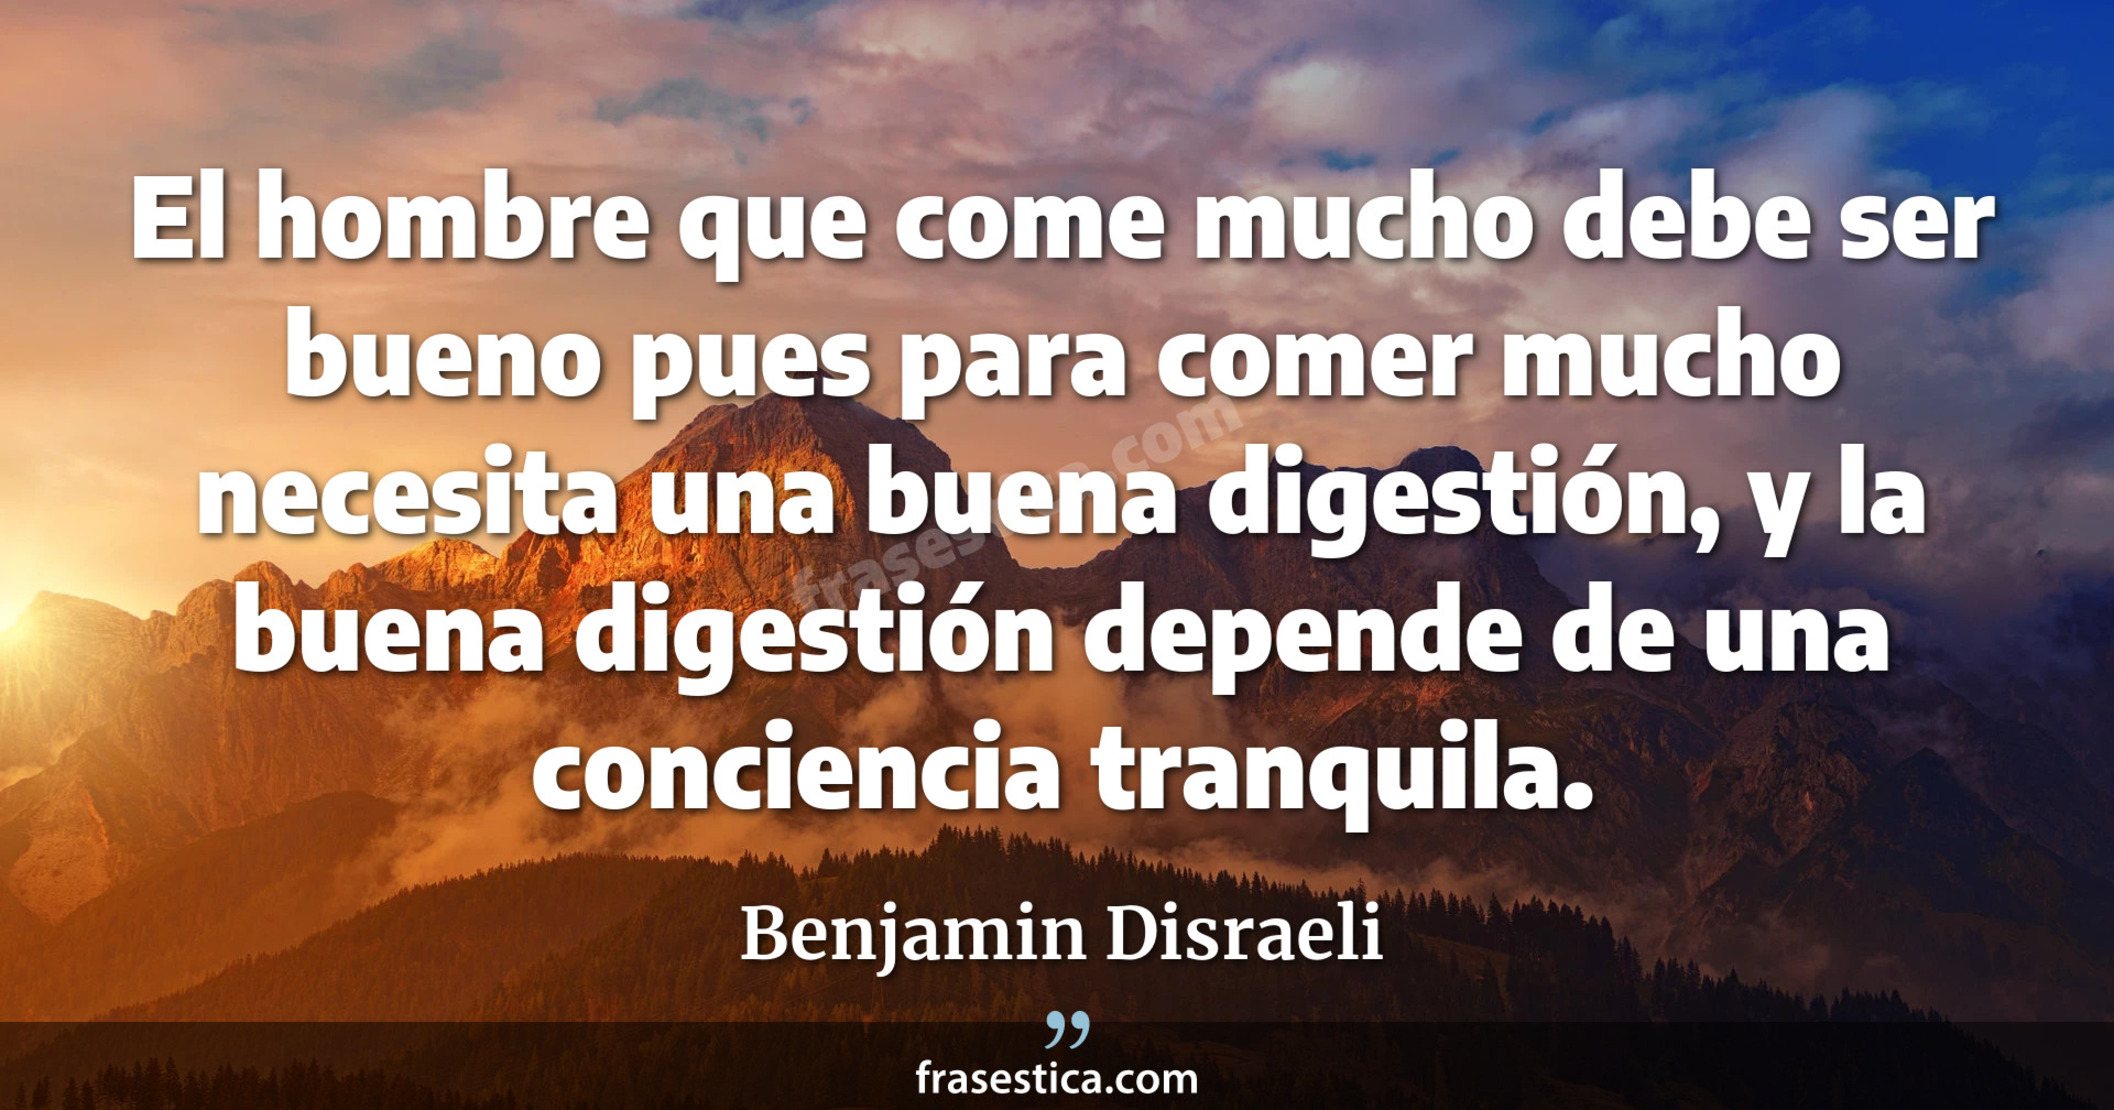 El hombre que come mucho debe ser bueno pues para comer mucho necesita una buena digestión, y la buena digestión depende de una conciencia tranquila. - Benjamin Disraeli